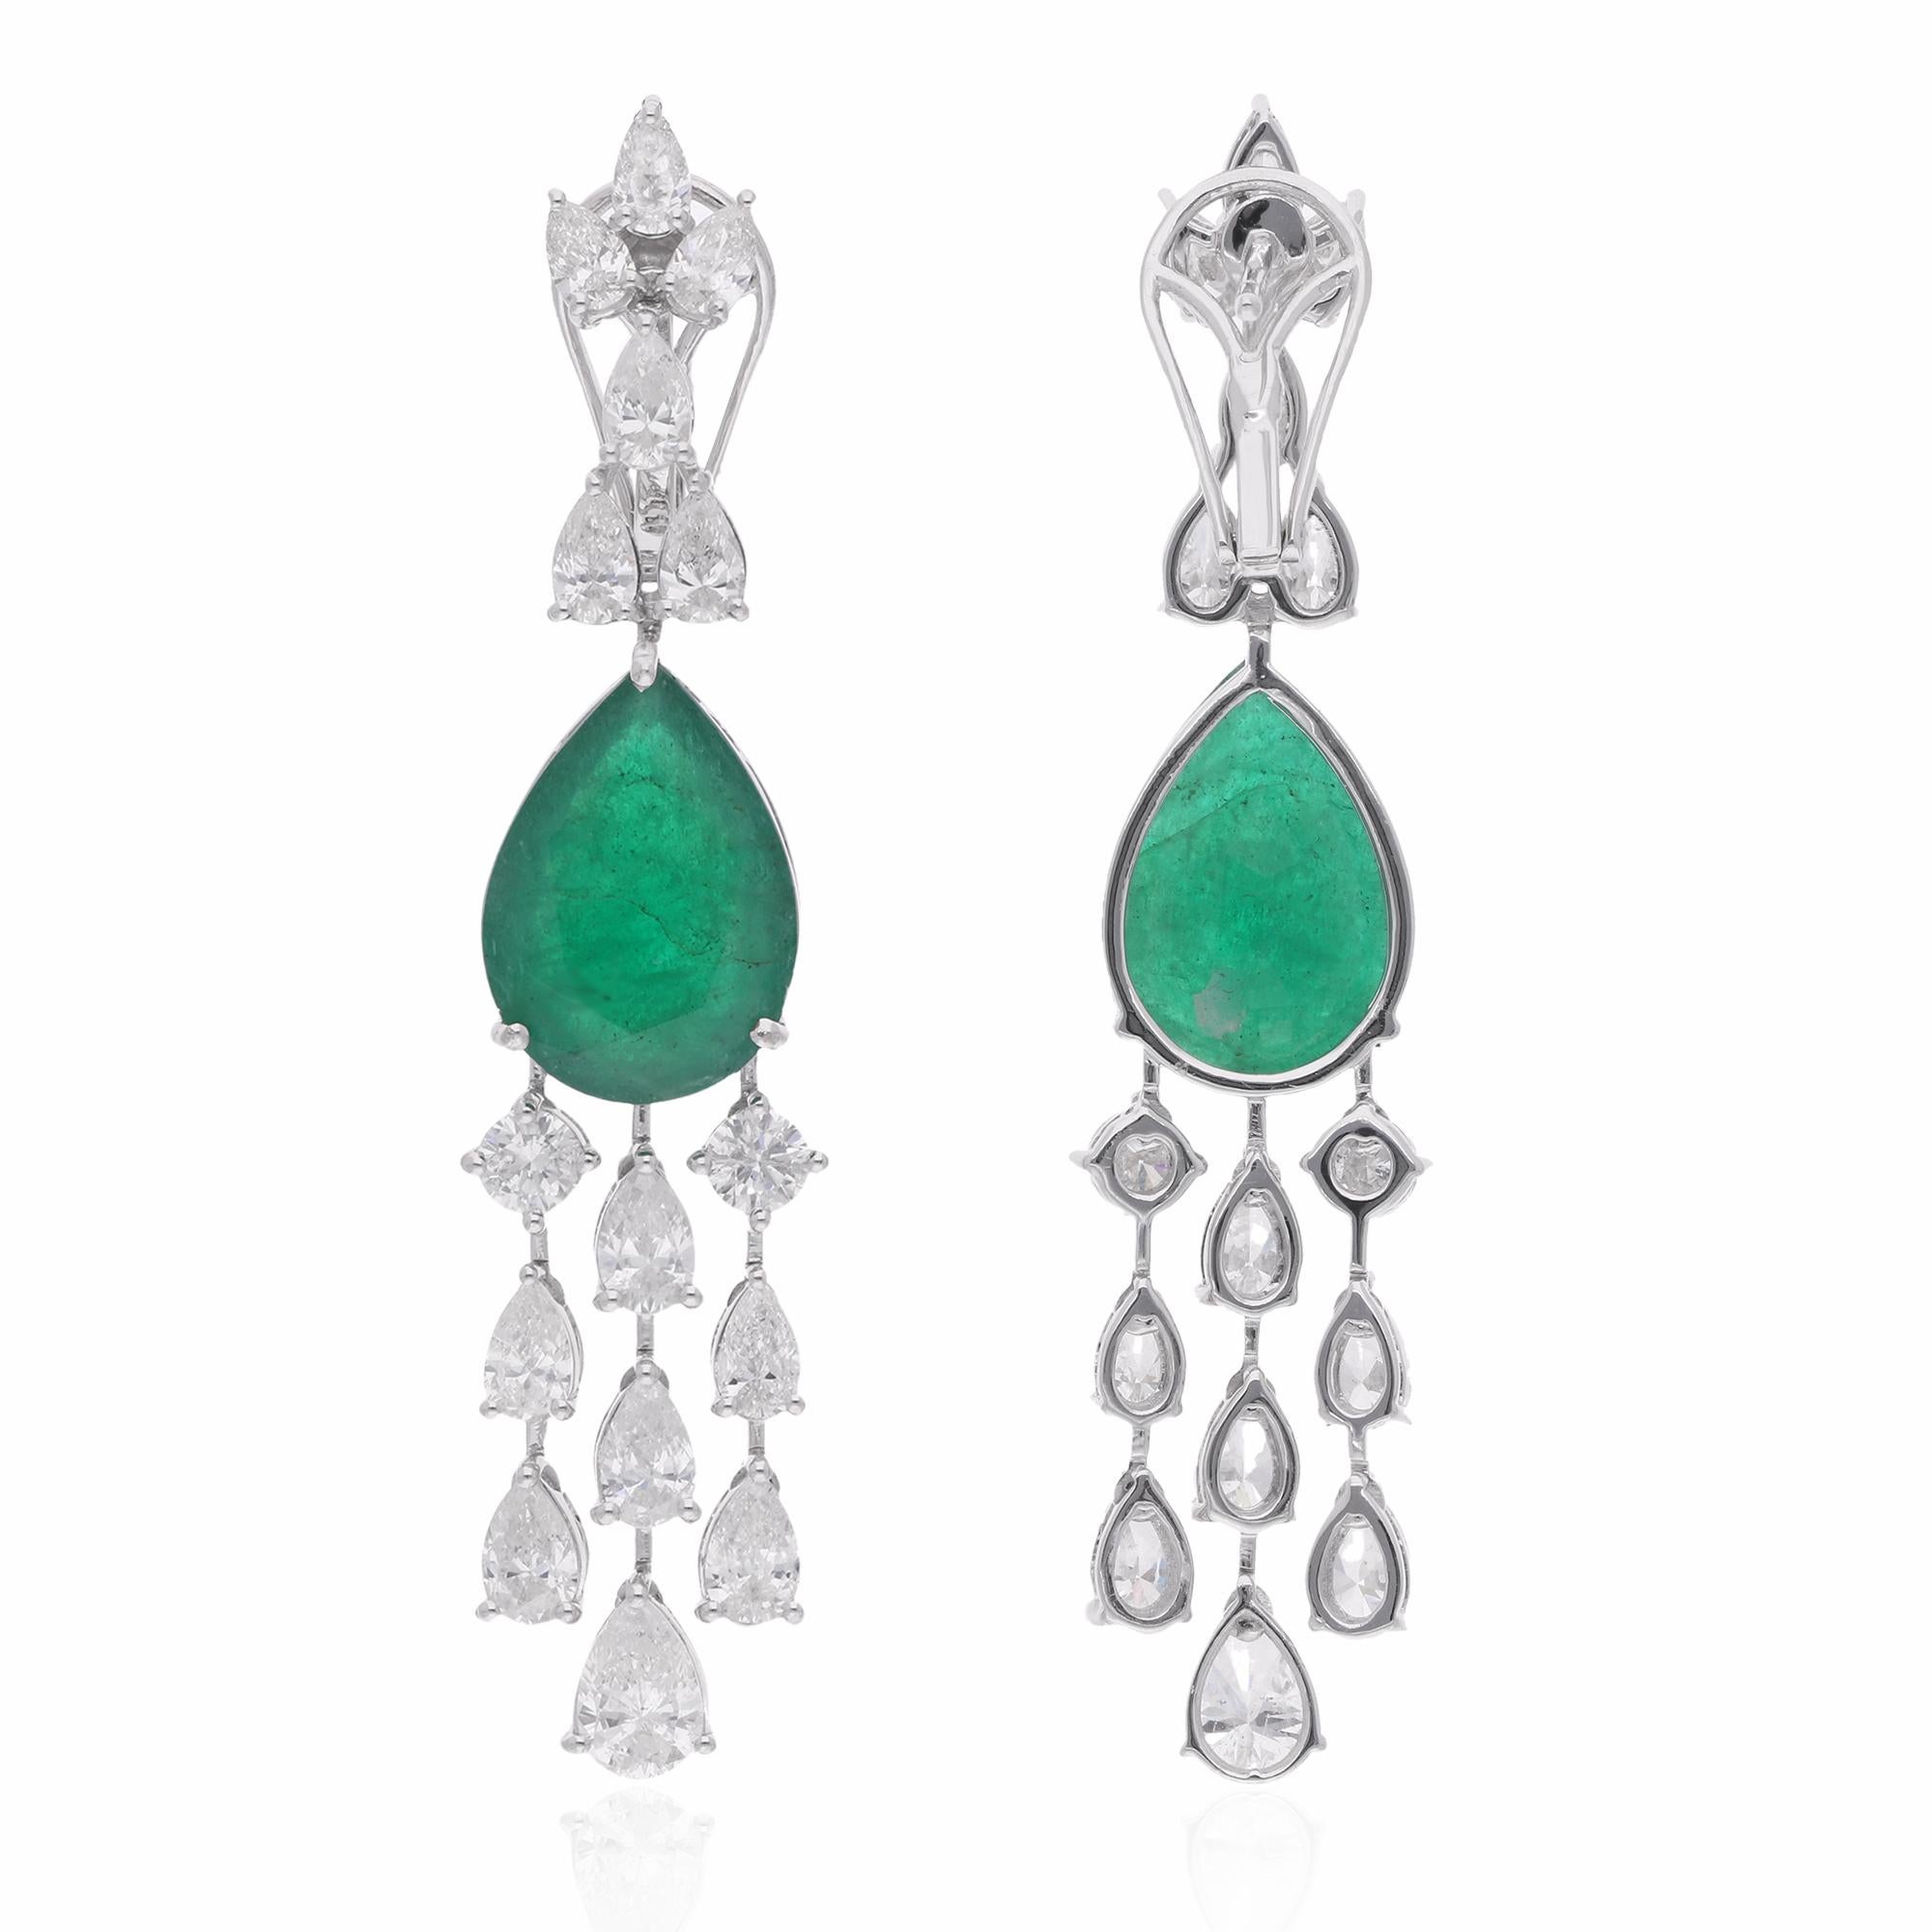 Erhöhen Sie Ihre Eleganz mit der bezaubernden Schönheit dieser birnenförmigen sambischen Smaragd-Edelstein-Kronleuchter-Ohrringe, die mit funkelnden Diamanten verziert sind und sorgfältig in luxuriösem 18 Karat Weißgold gefertigt wurden. Diese